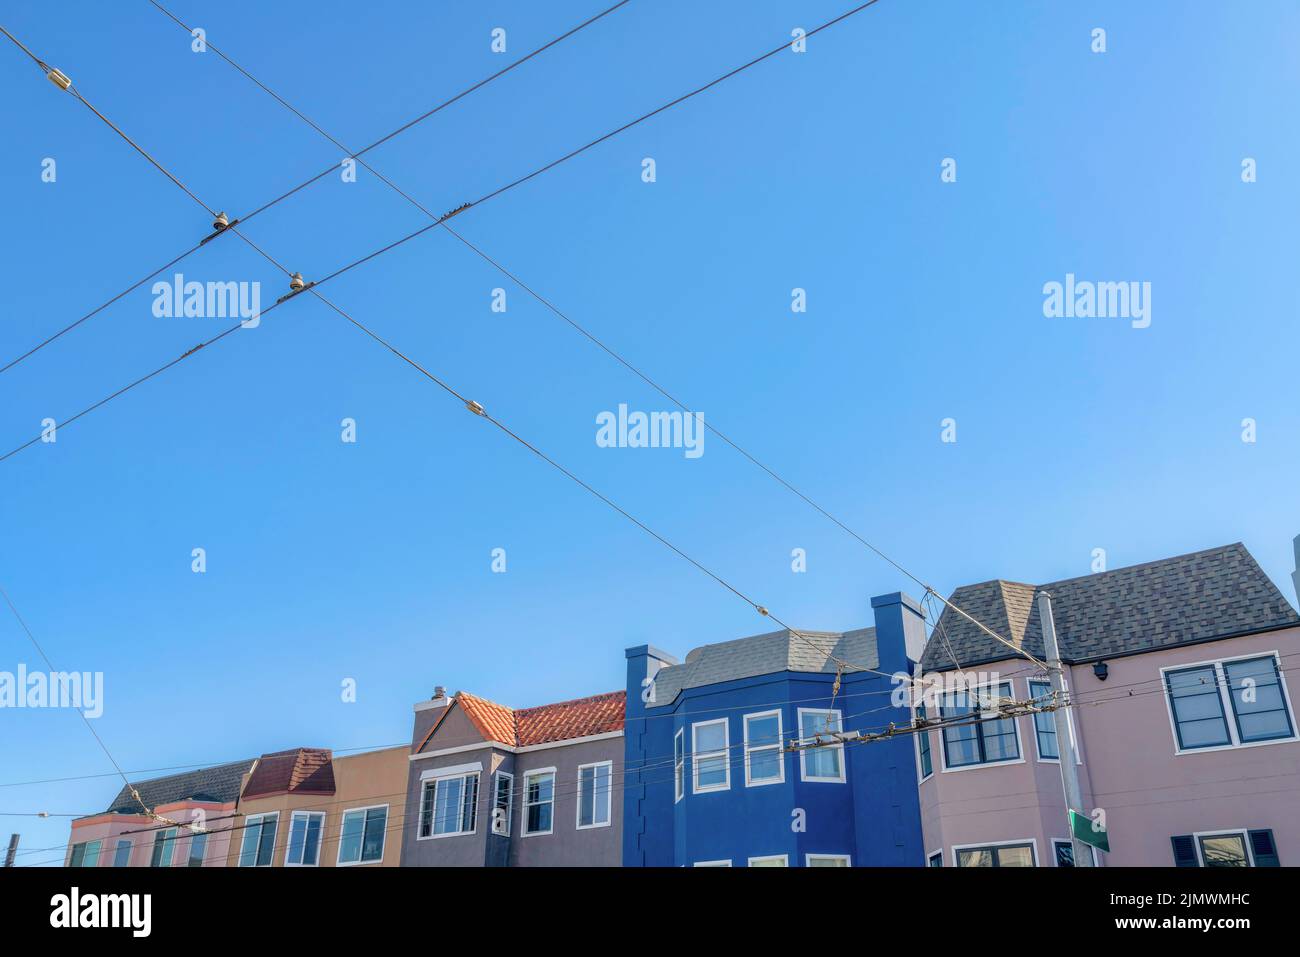 Rangée colorée de maisons à San Francisco, Californie avec vue sur les câbles électriques à l'avant. Il y a une borne électrique à l'avant de la maison Banque D'Images